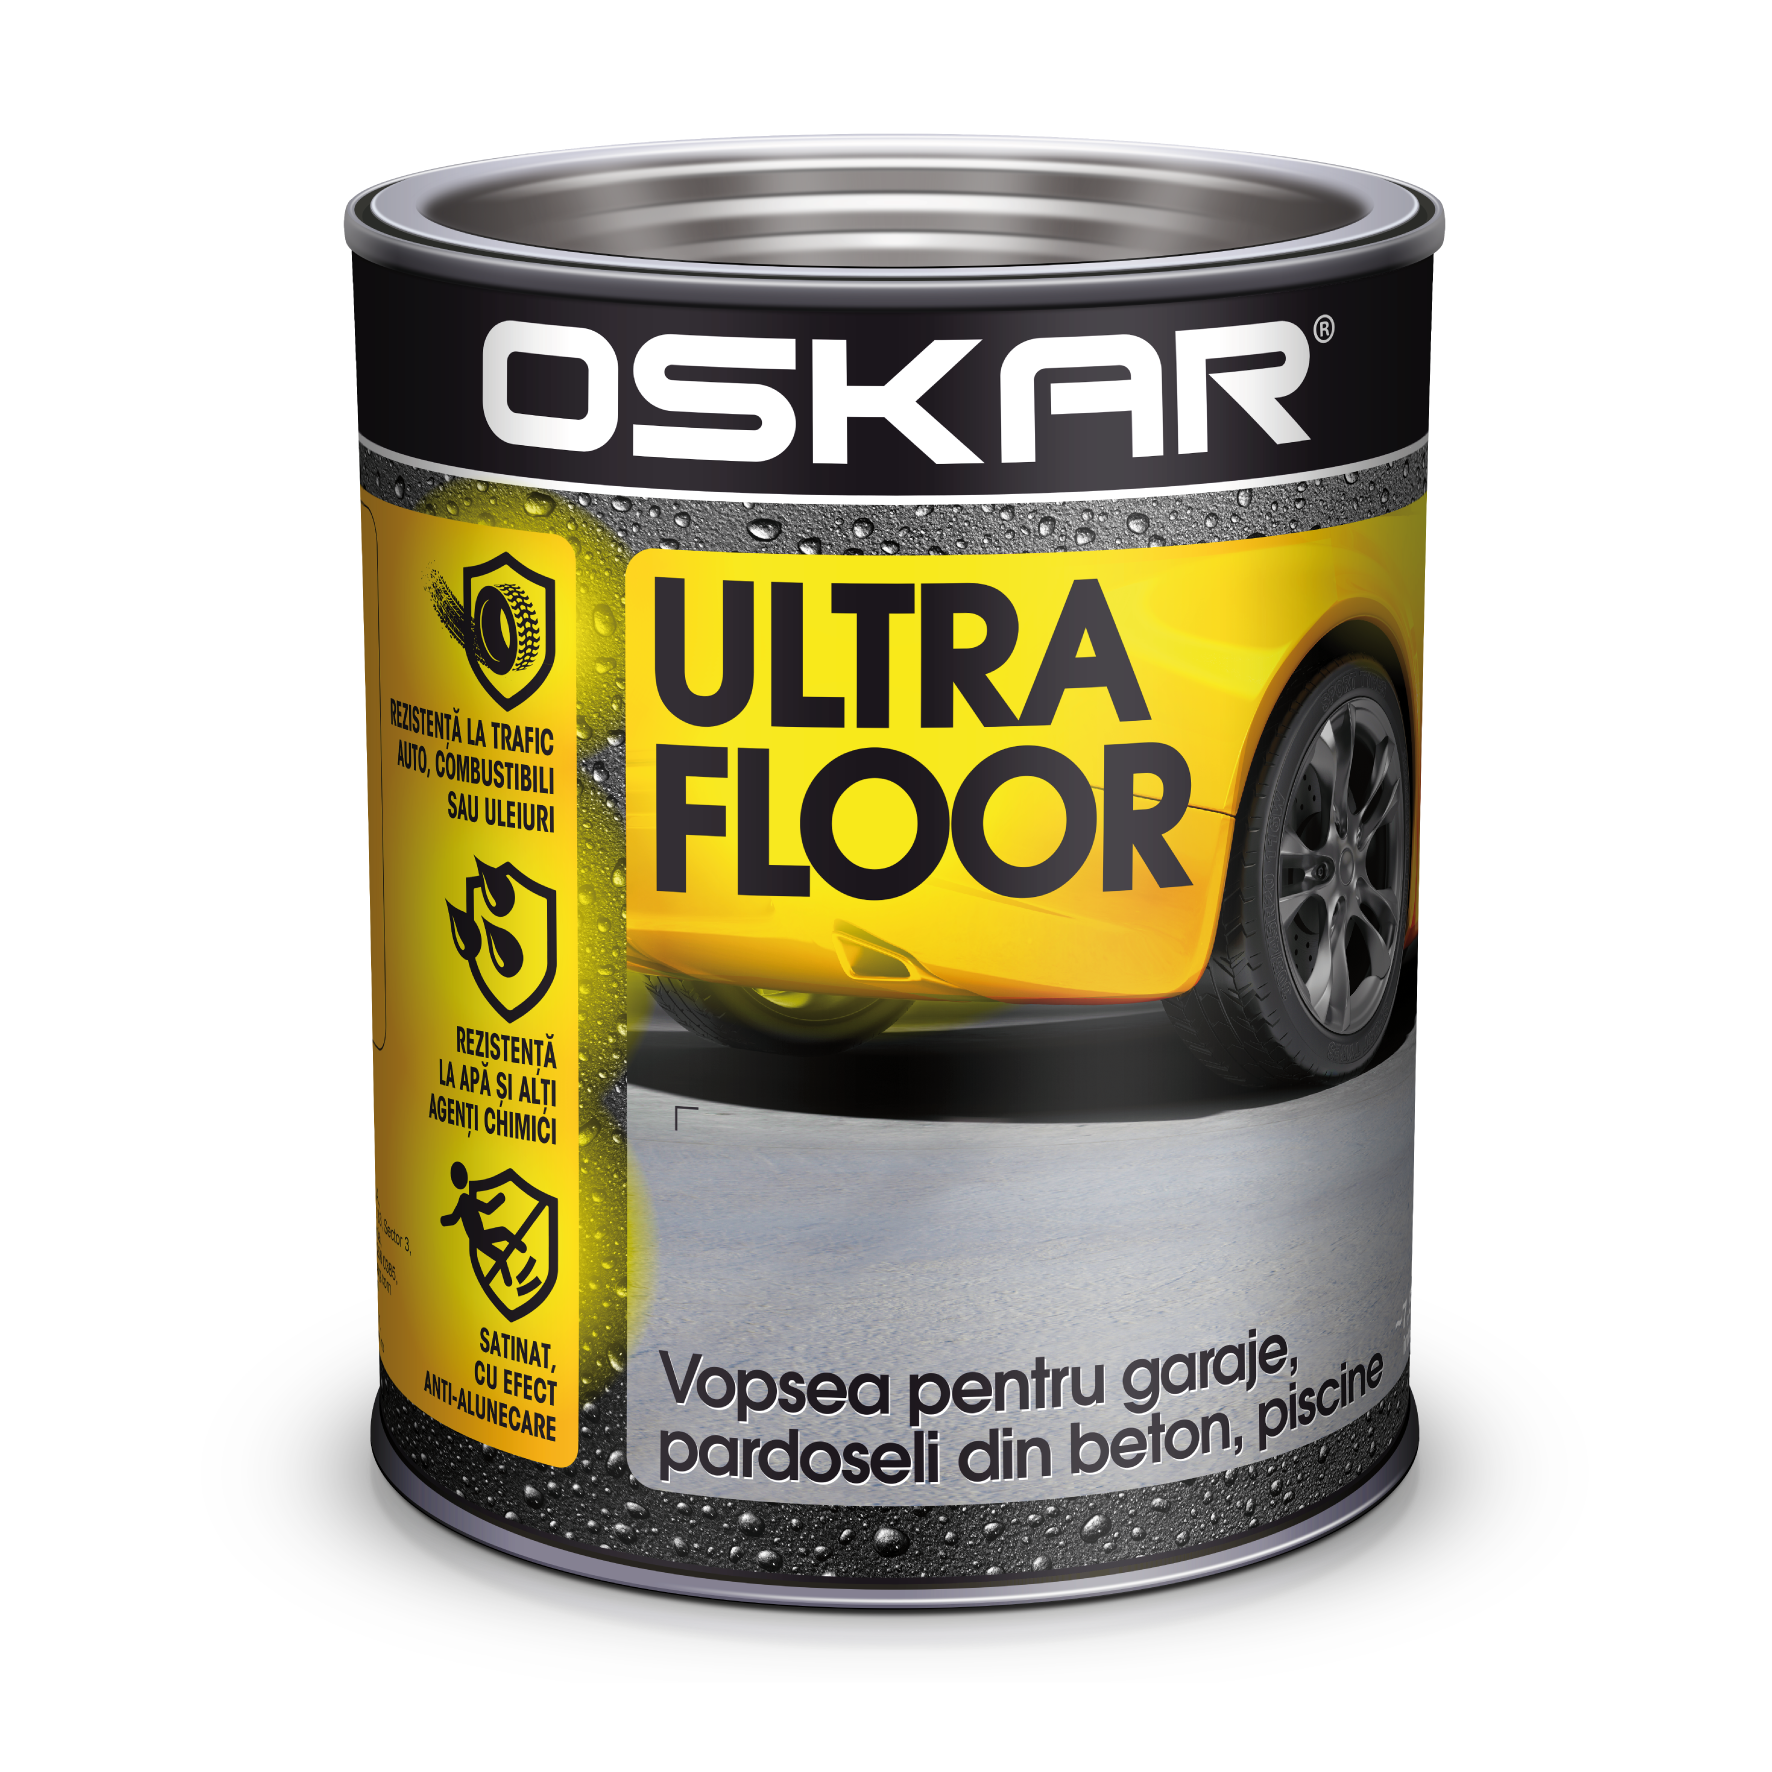 OSKAR Ultra Floor